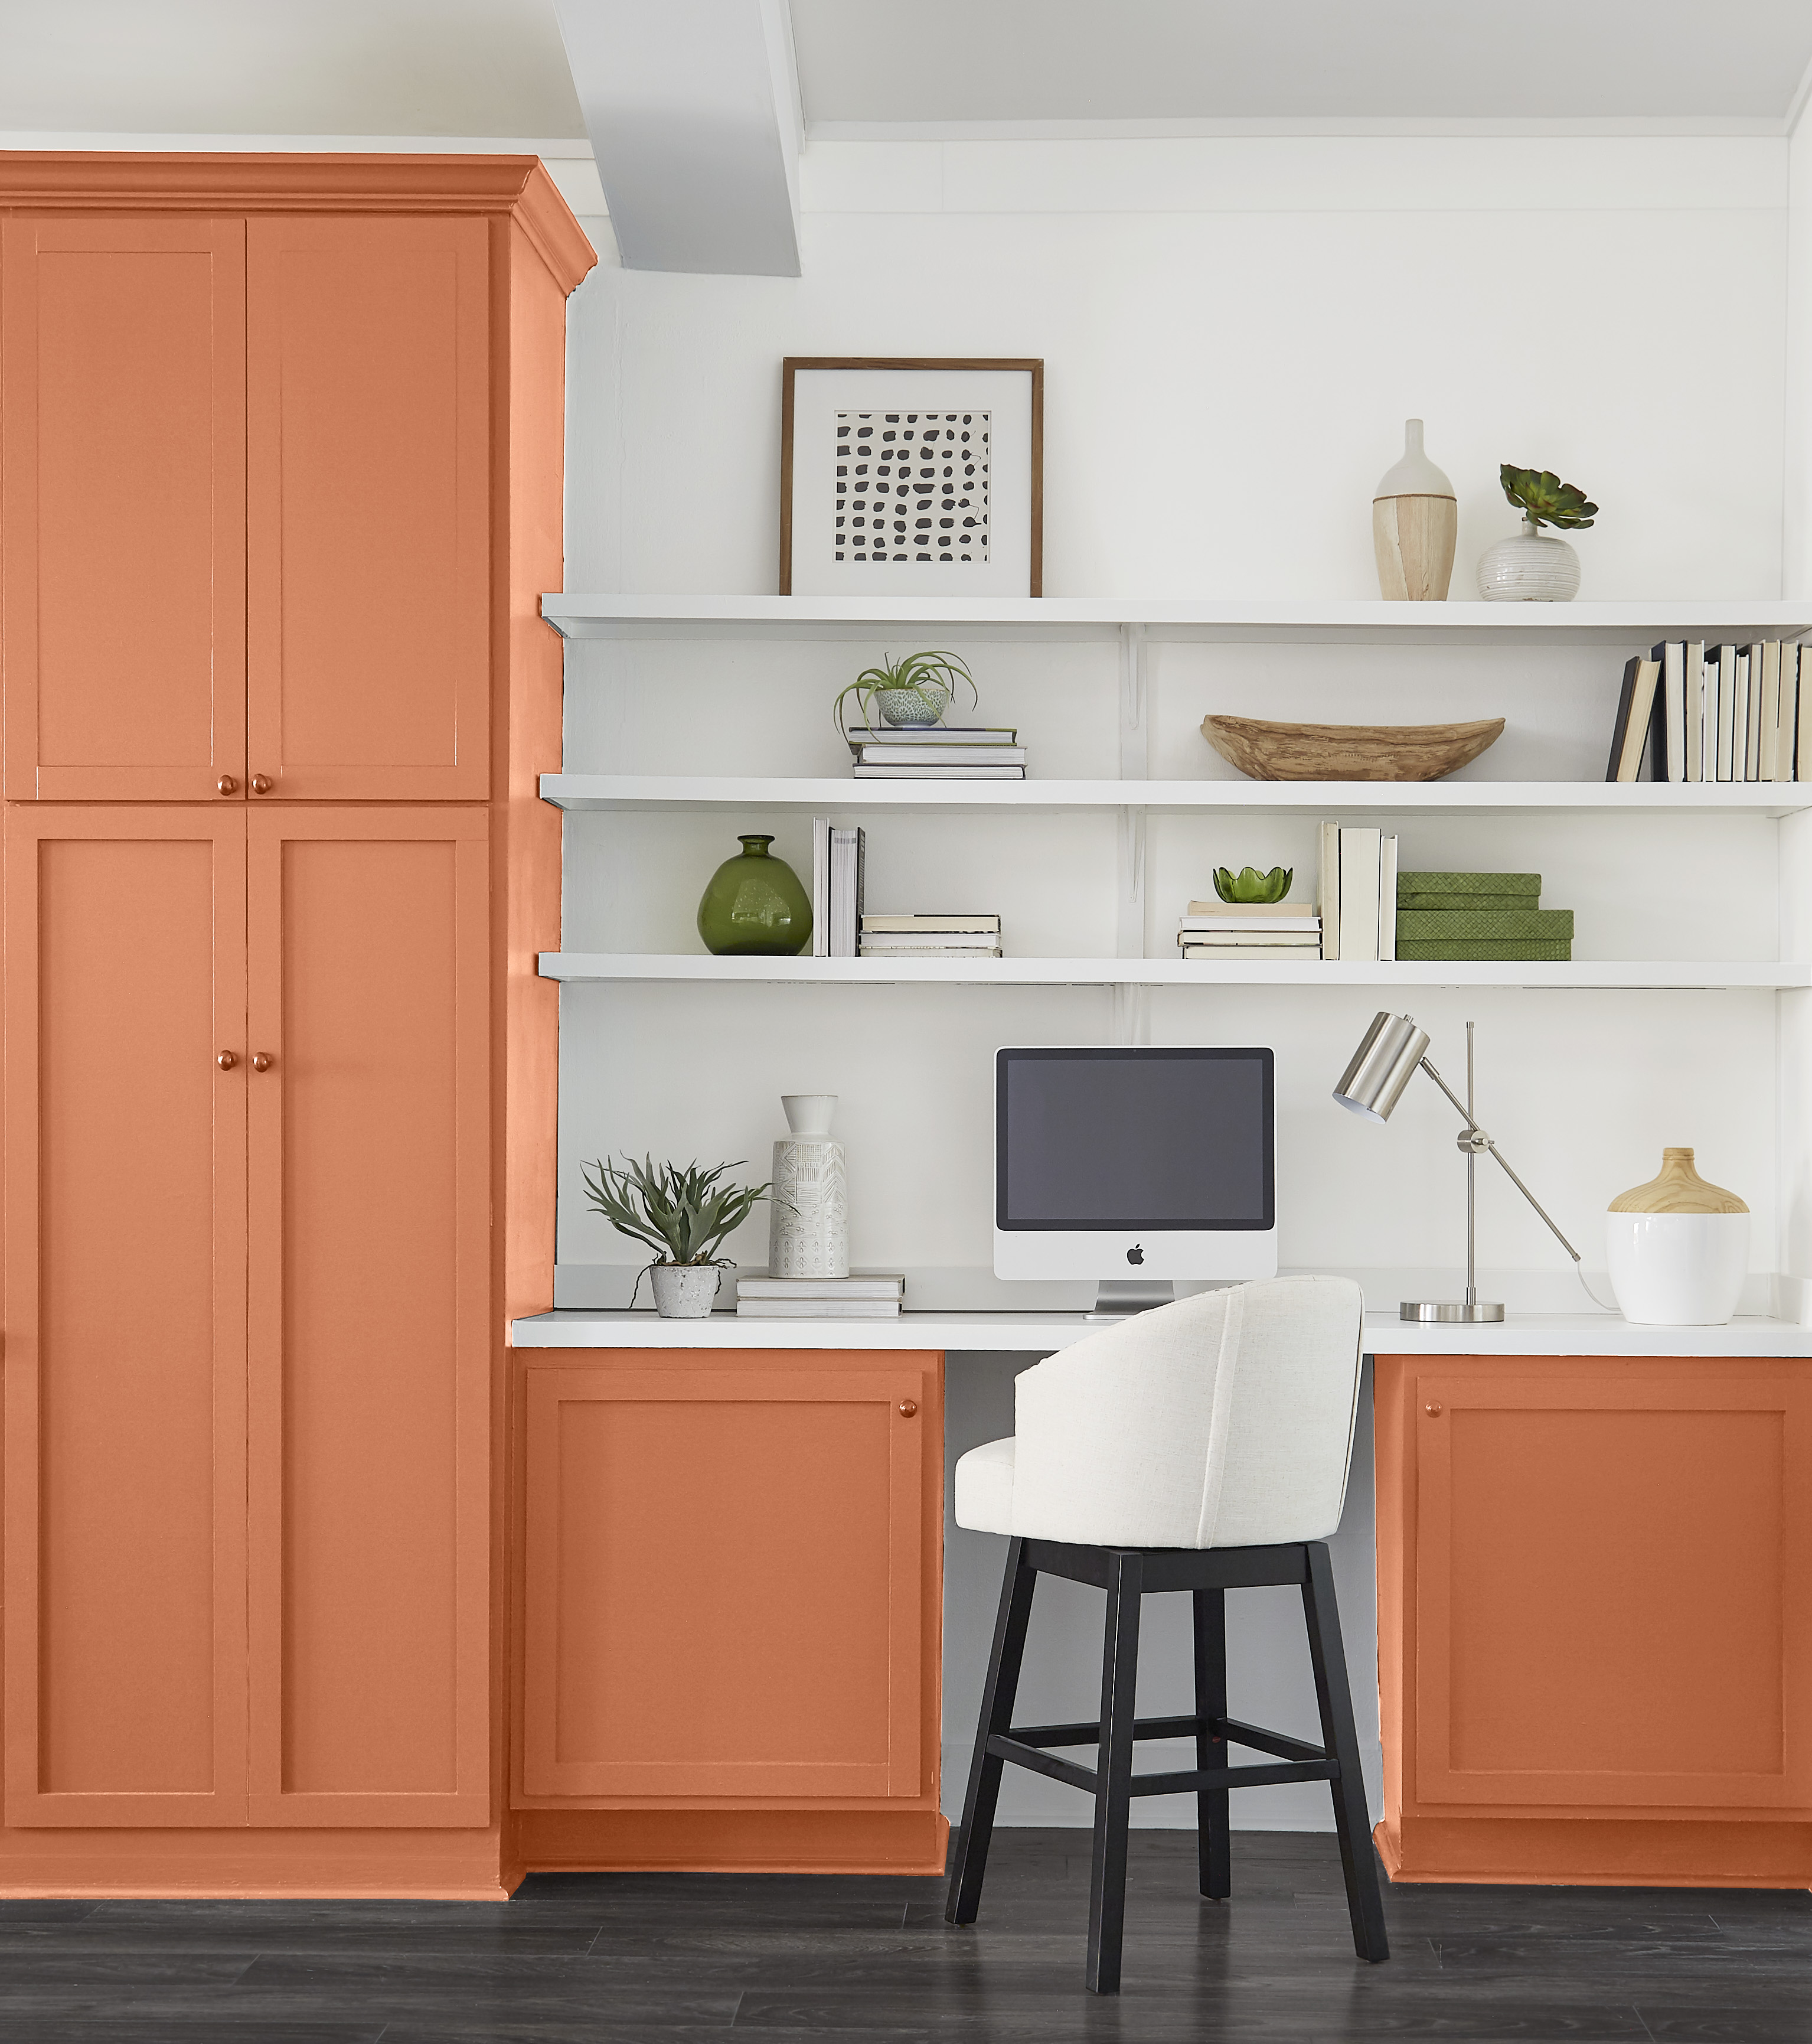 Un espace de rangement et de bureau intégré avec des armoires peintes dans une couleur profonde d’orange cuivré